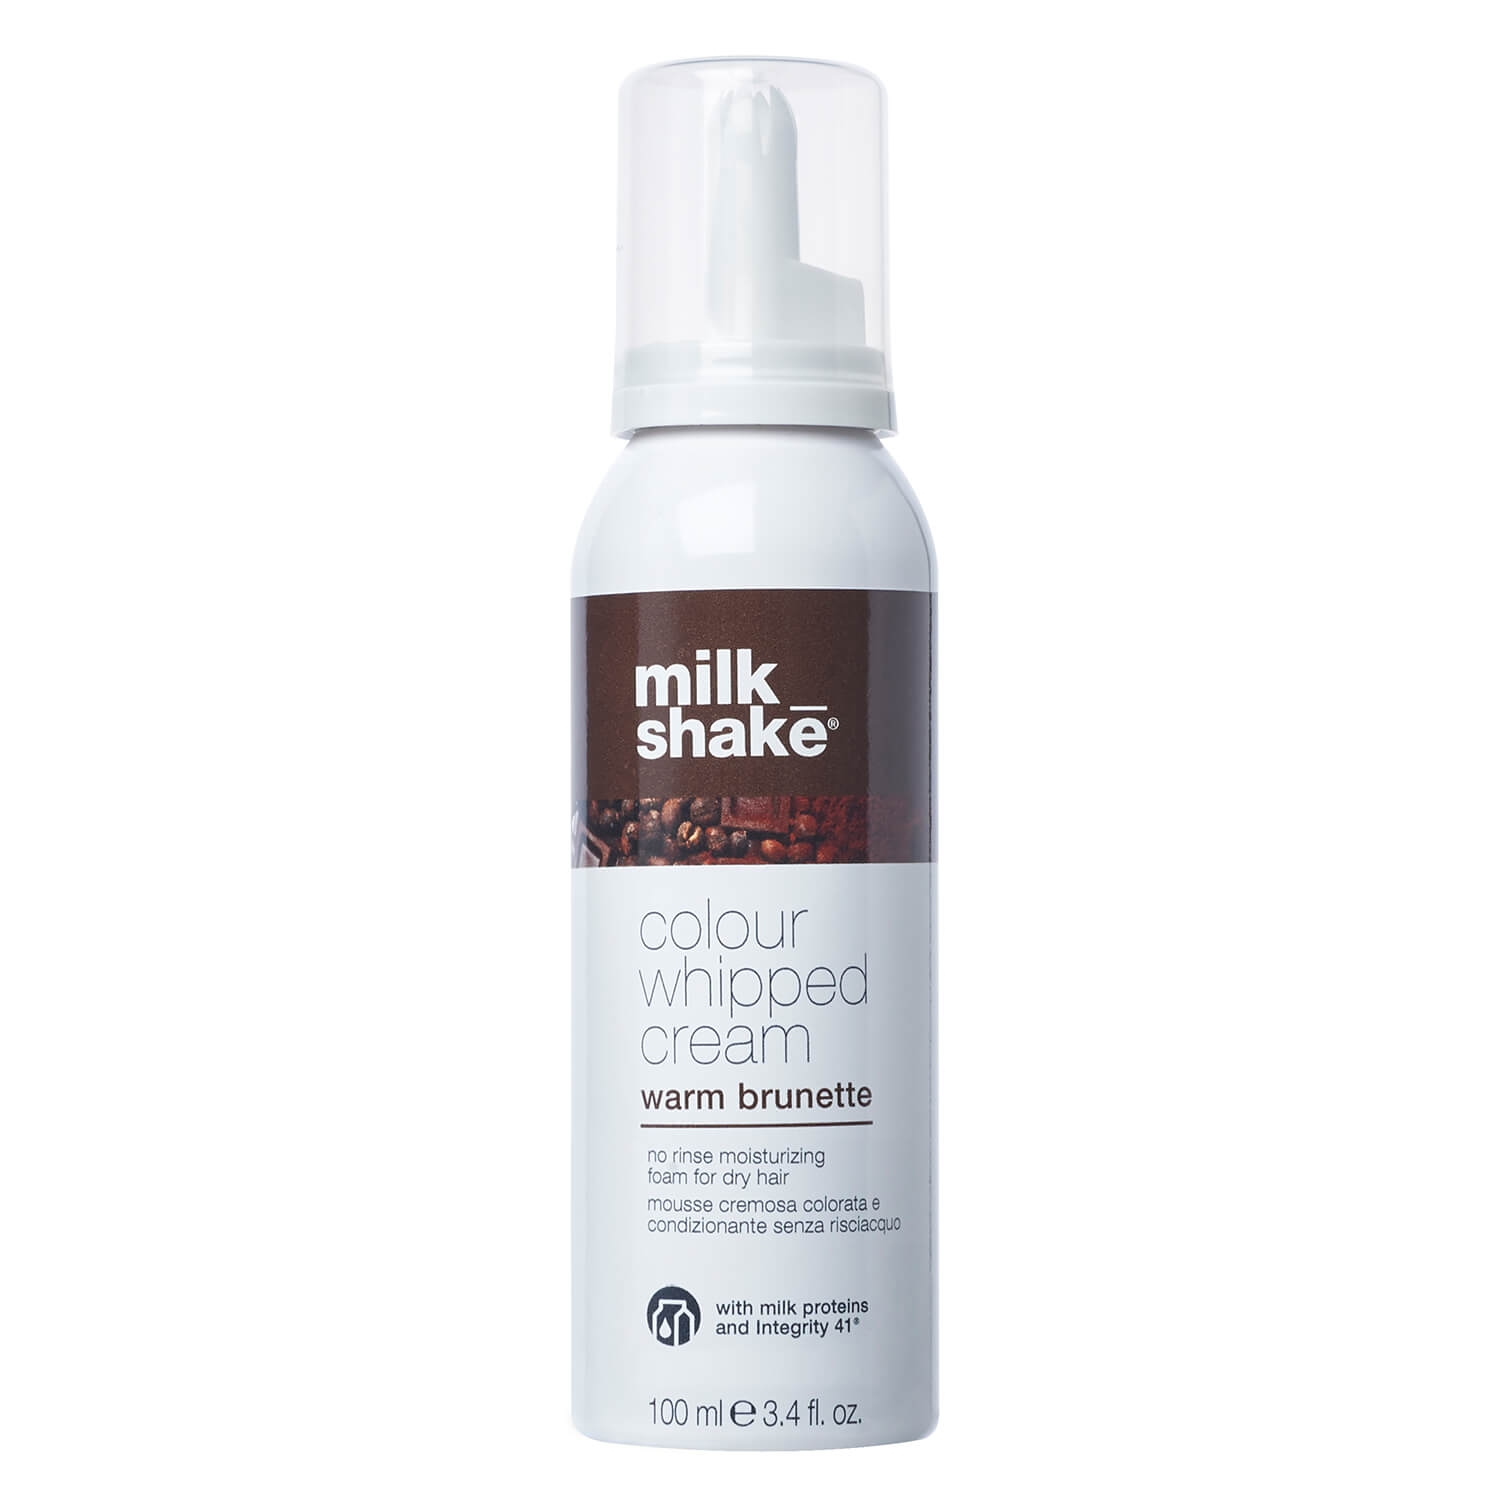 Produktbild von milk_shake colour whipped cream - warm brunette